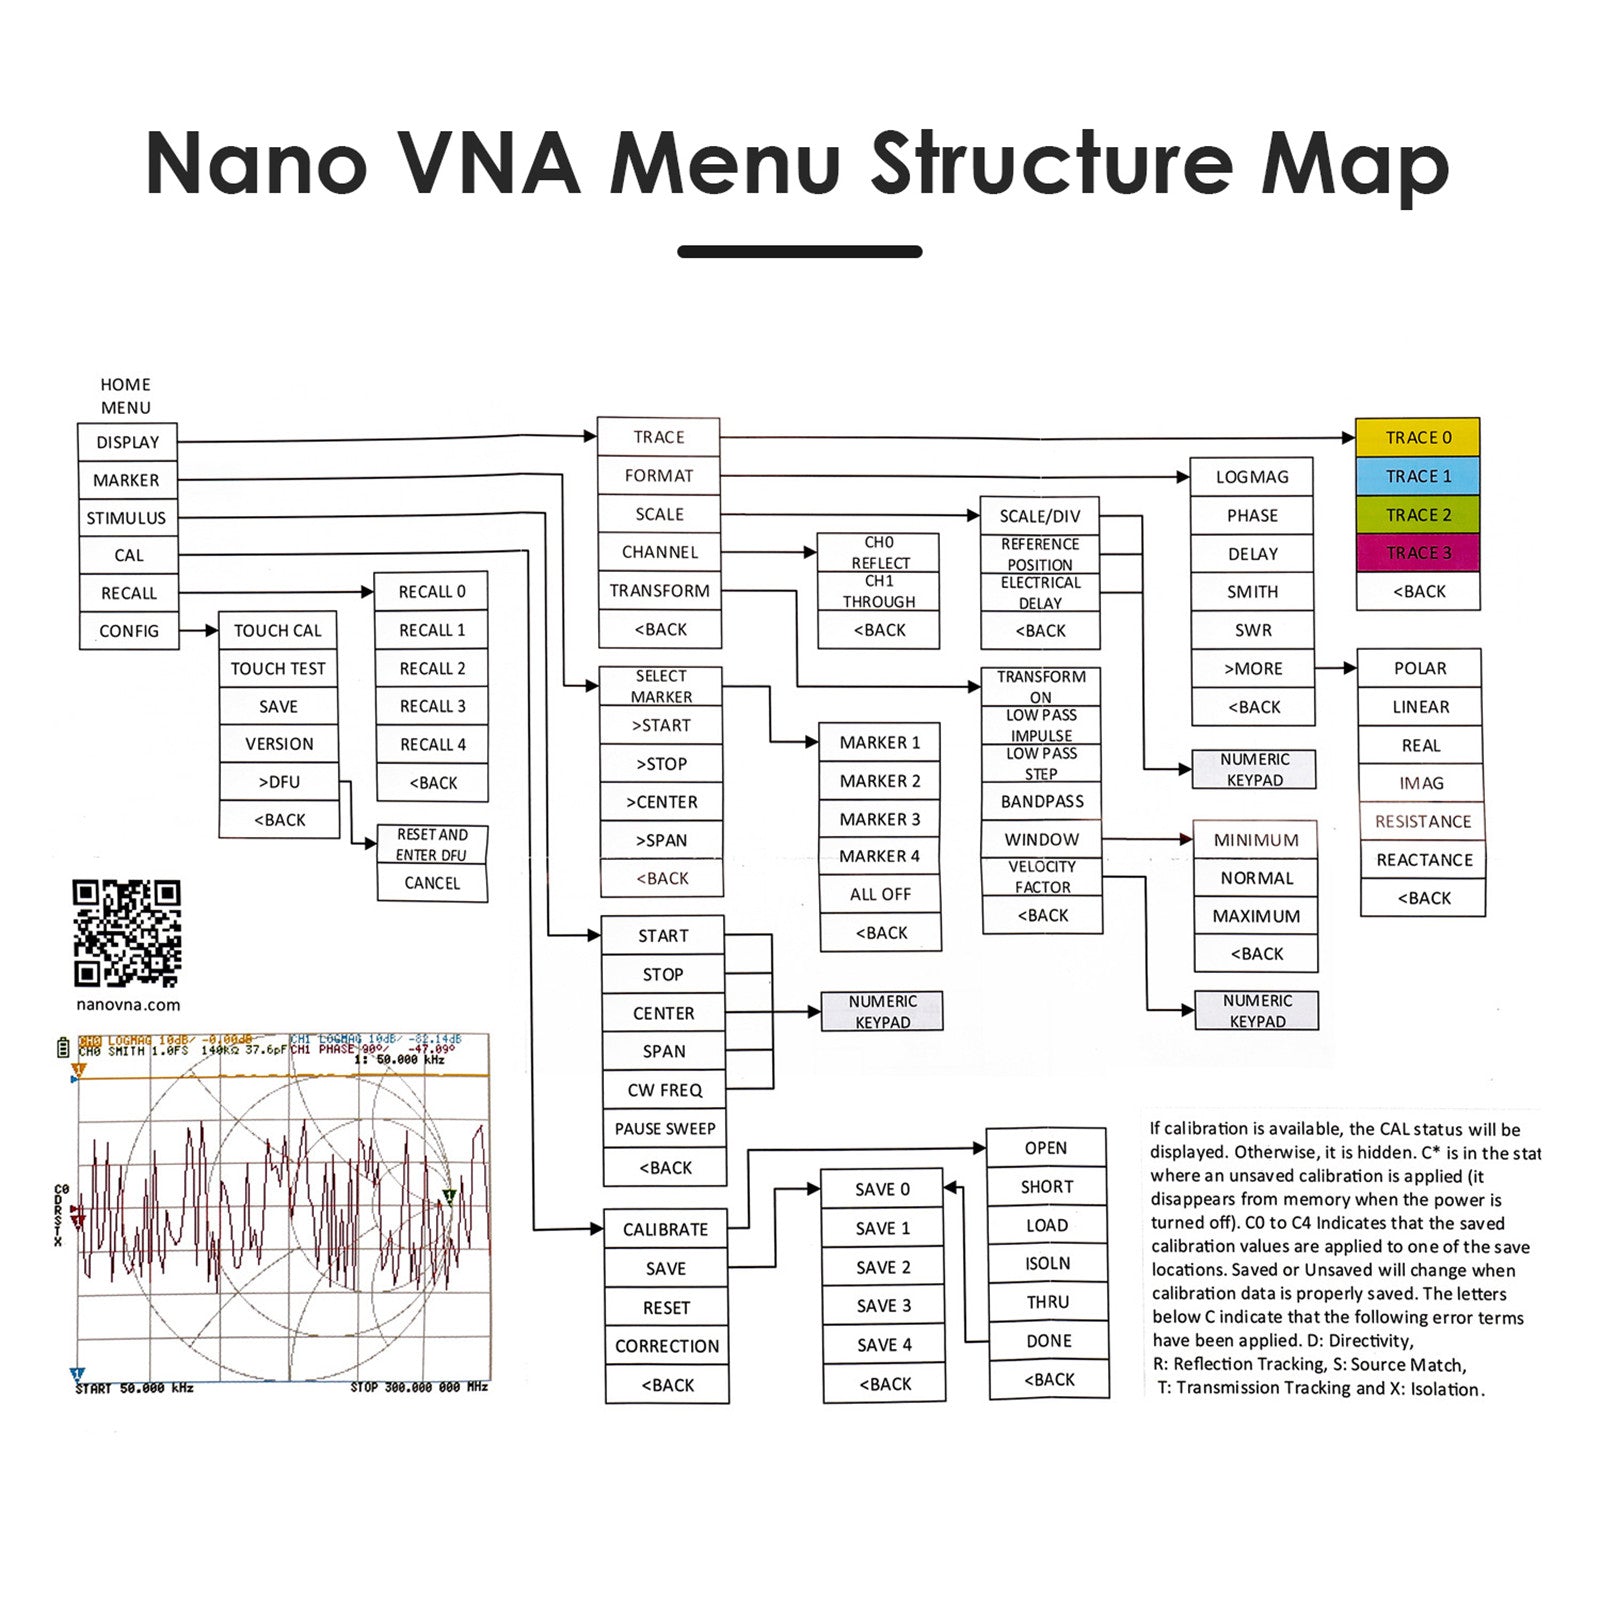 Netværksanalysator, 40 tommer Touchscreen, NanoVNA-H4